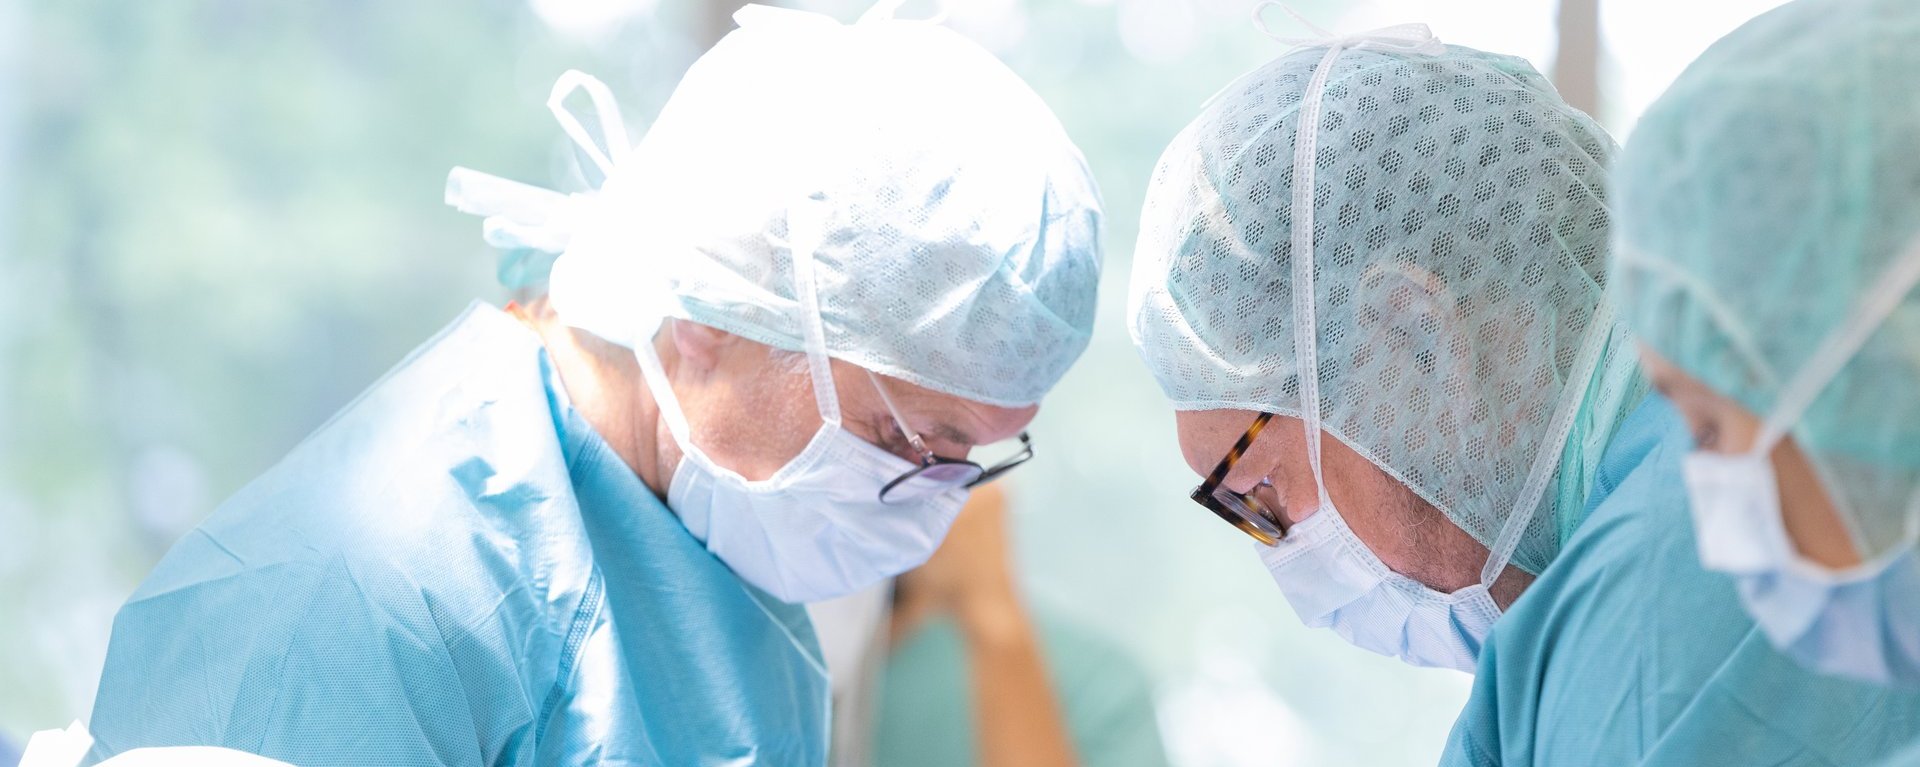 Zwei Ärzte aus dem Fachbereich Gefäßchirurgie am Klinikum Kempten beugen sich in voller Operationskleidung über einen Patienten